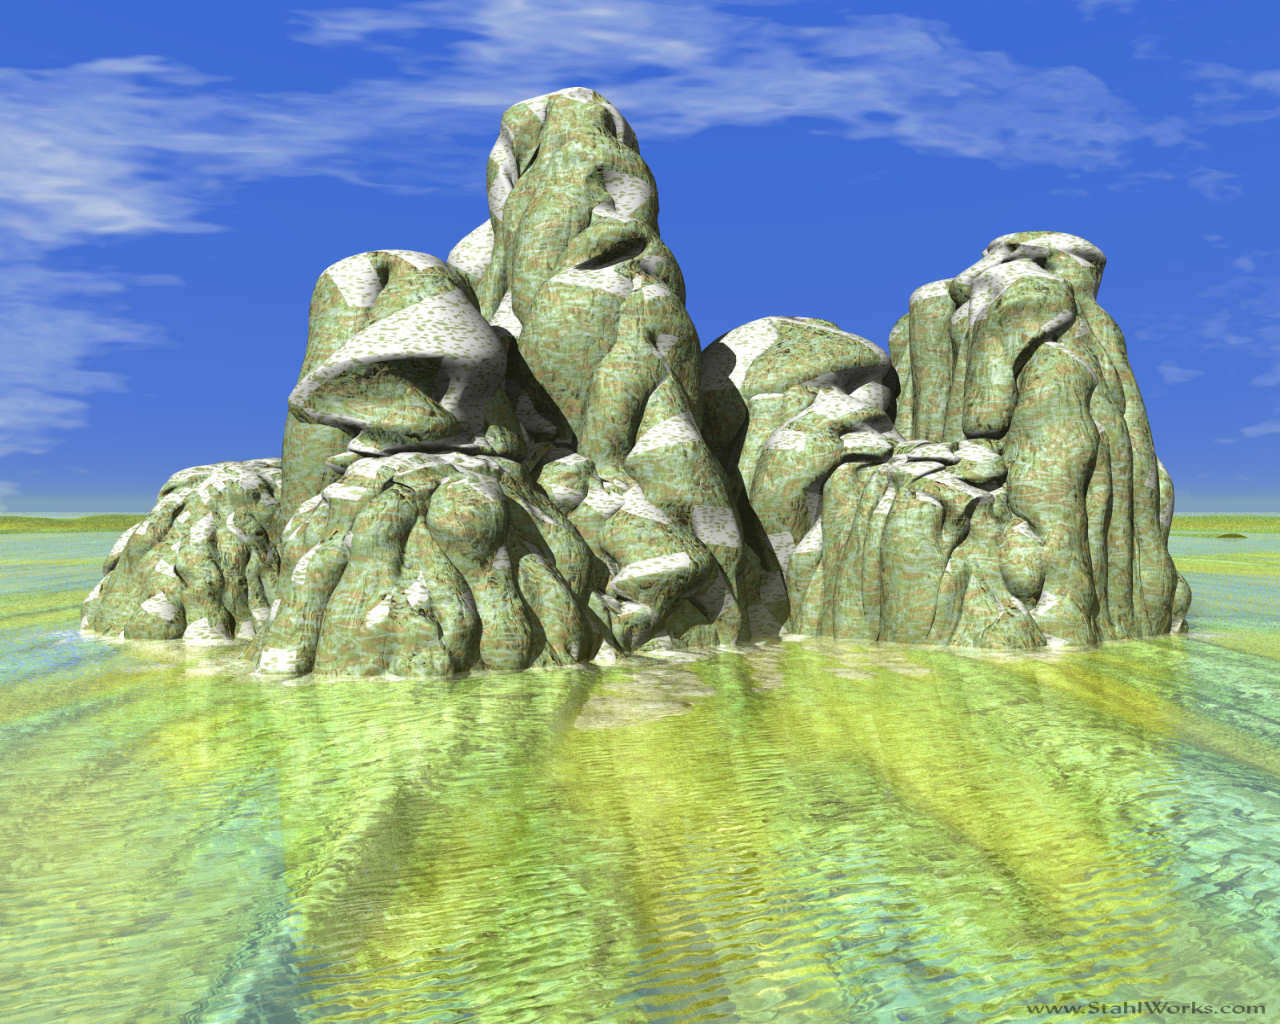 Potato Rocks in a Lake, Free Desktop Wallpaper, 1280x1024 resolution